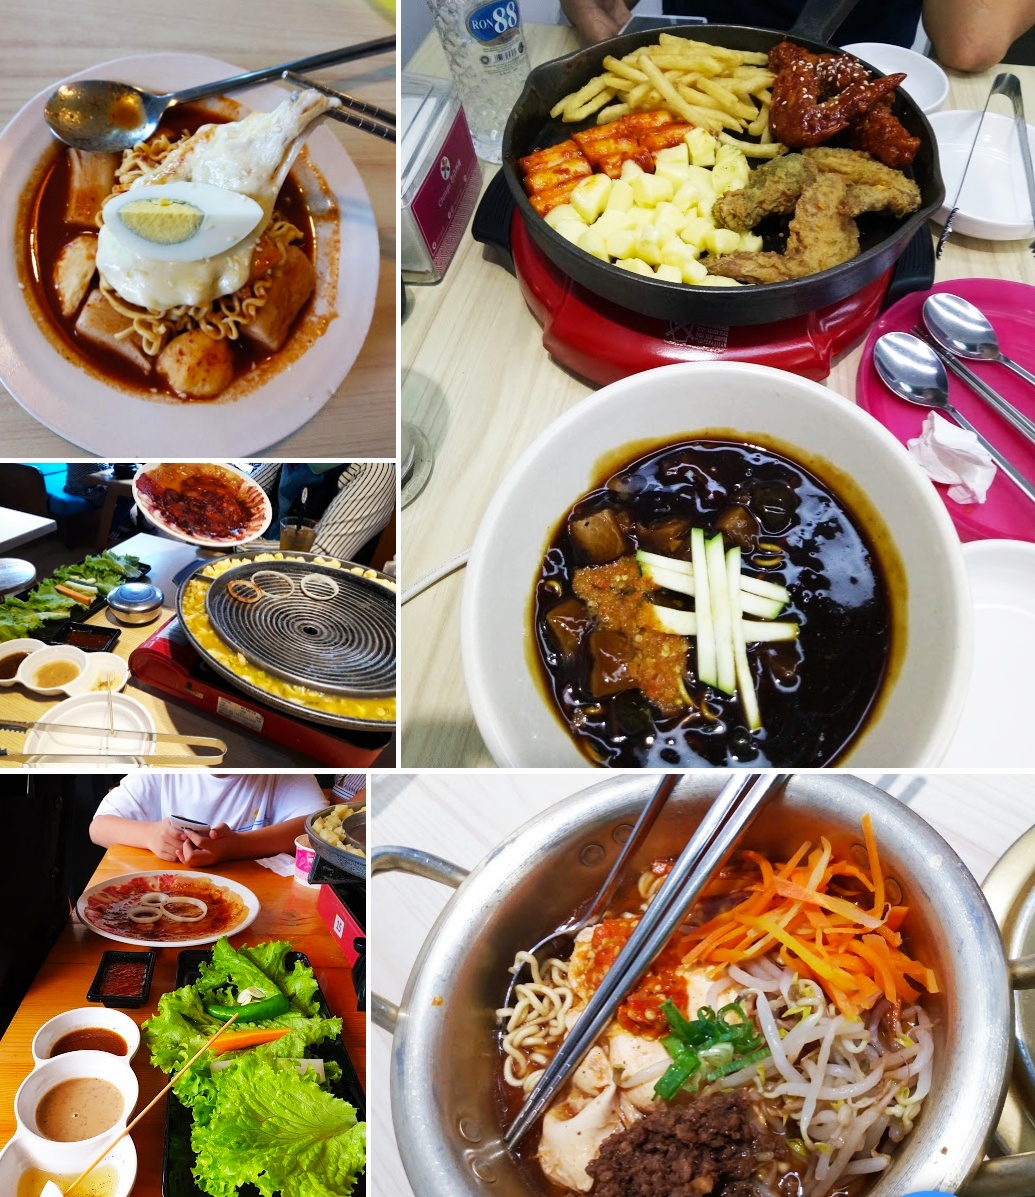  Chingu  Cafe  Ala Korea Sajikan Makanan Tak Mengandung B2 